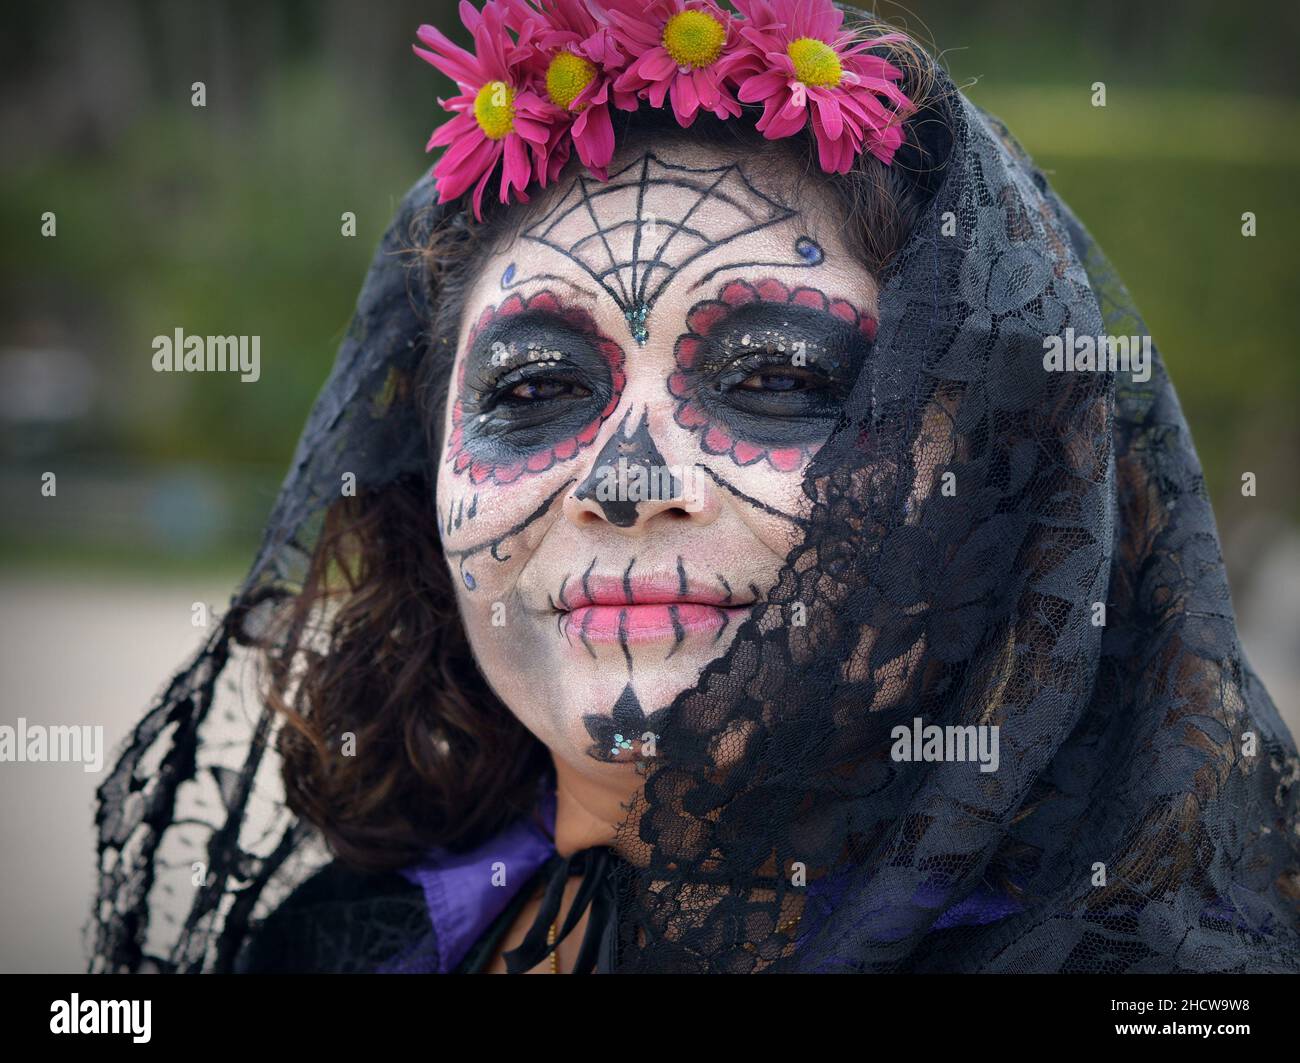 Ernst zu nehmender Mexikanerin mittleren Alters mit Zombie-ähnelichem bemaltem Gesicht-Make-up und schwarzem Schal blickt auf den Zuschauer am Tag der Toten (Dia de los Muertos). Stockfoto